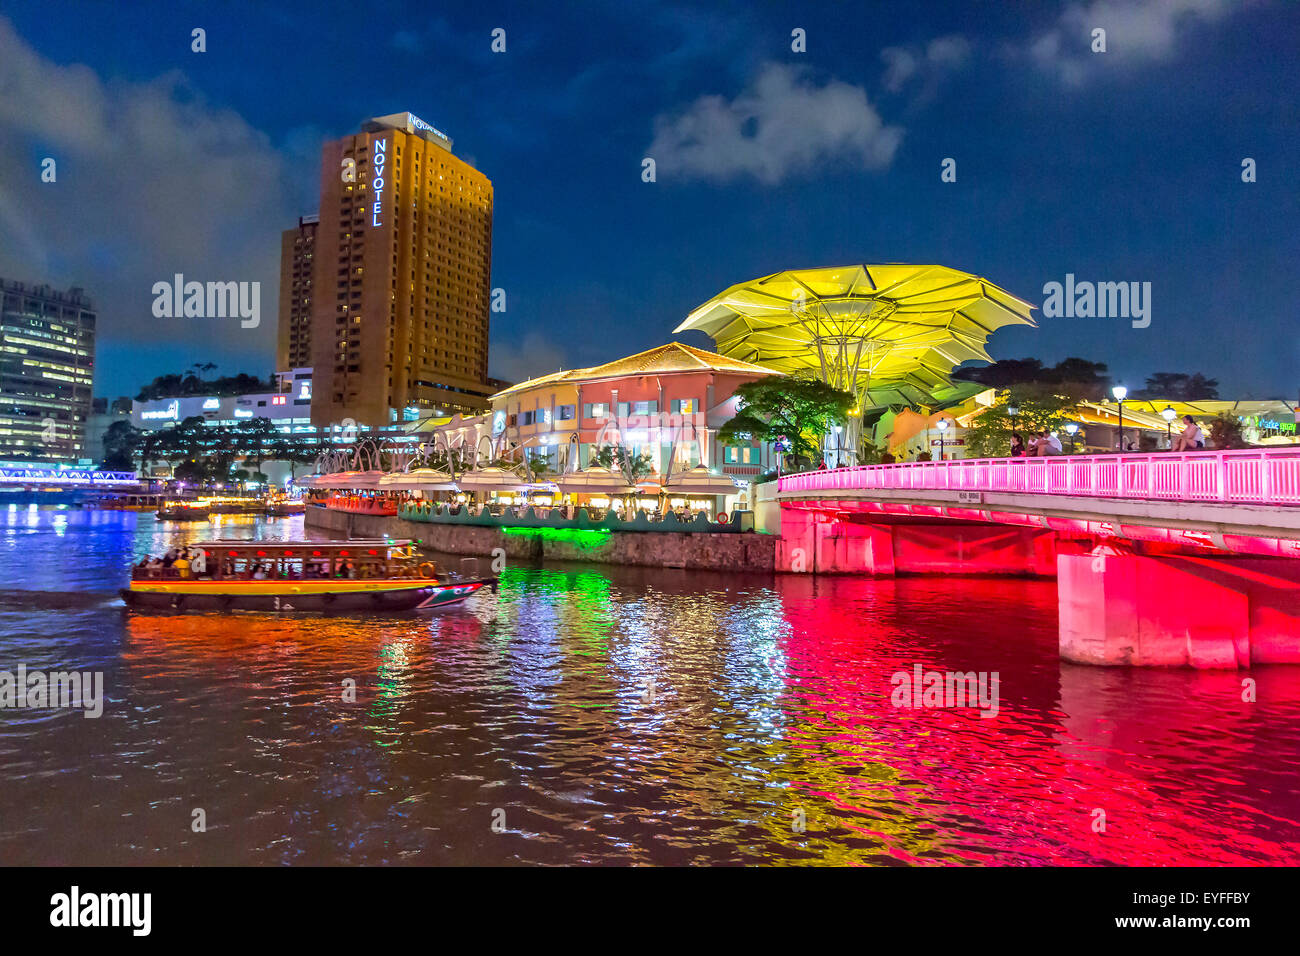 Vue du quai Clarke la nuit, allumé dans le changement de couleurs. La transformée d'entrepôts le long de la rivière Singapour devient une mag Banque D'Images